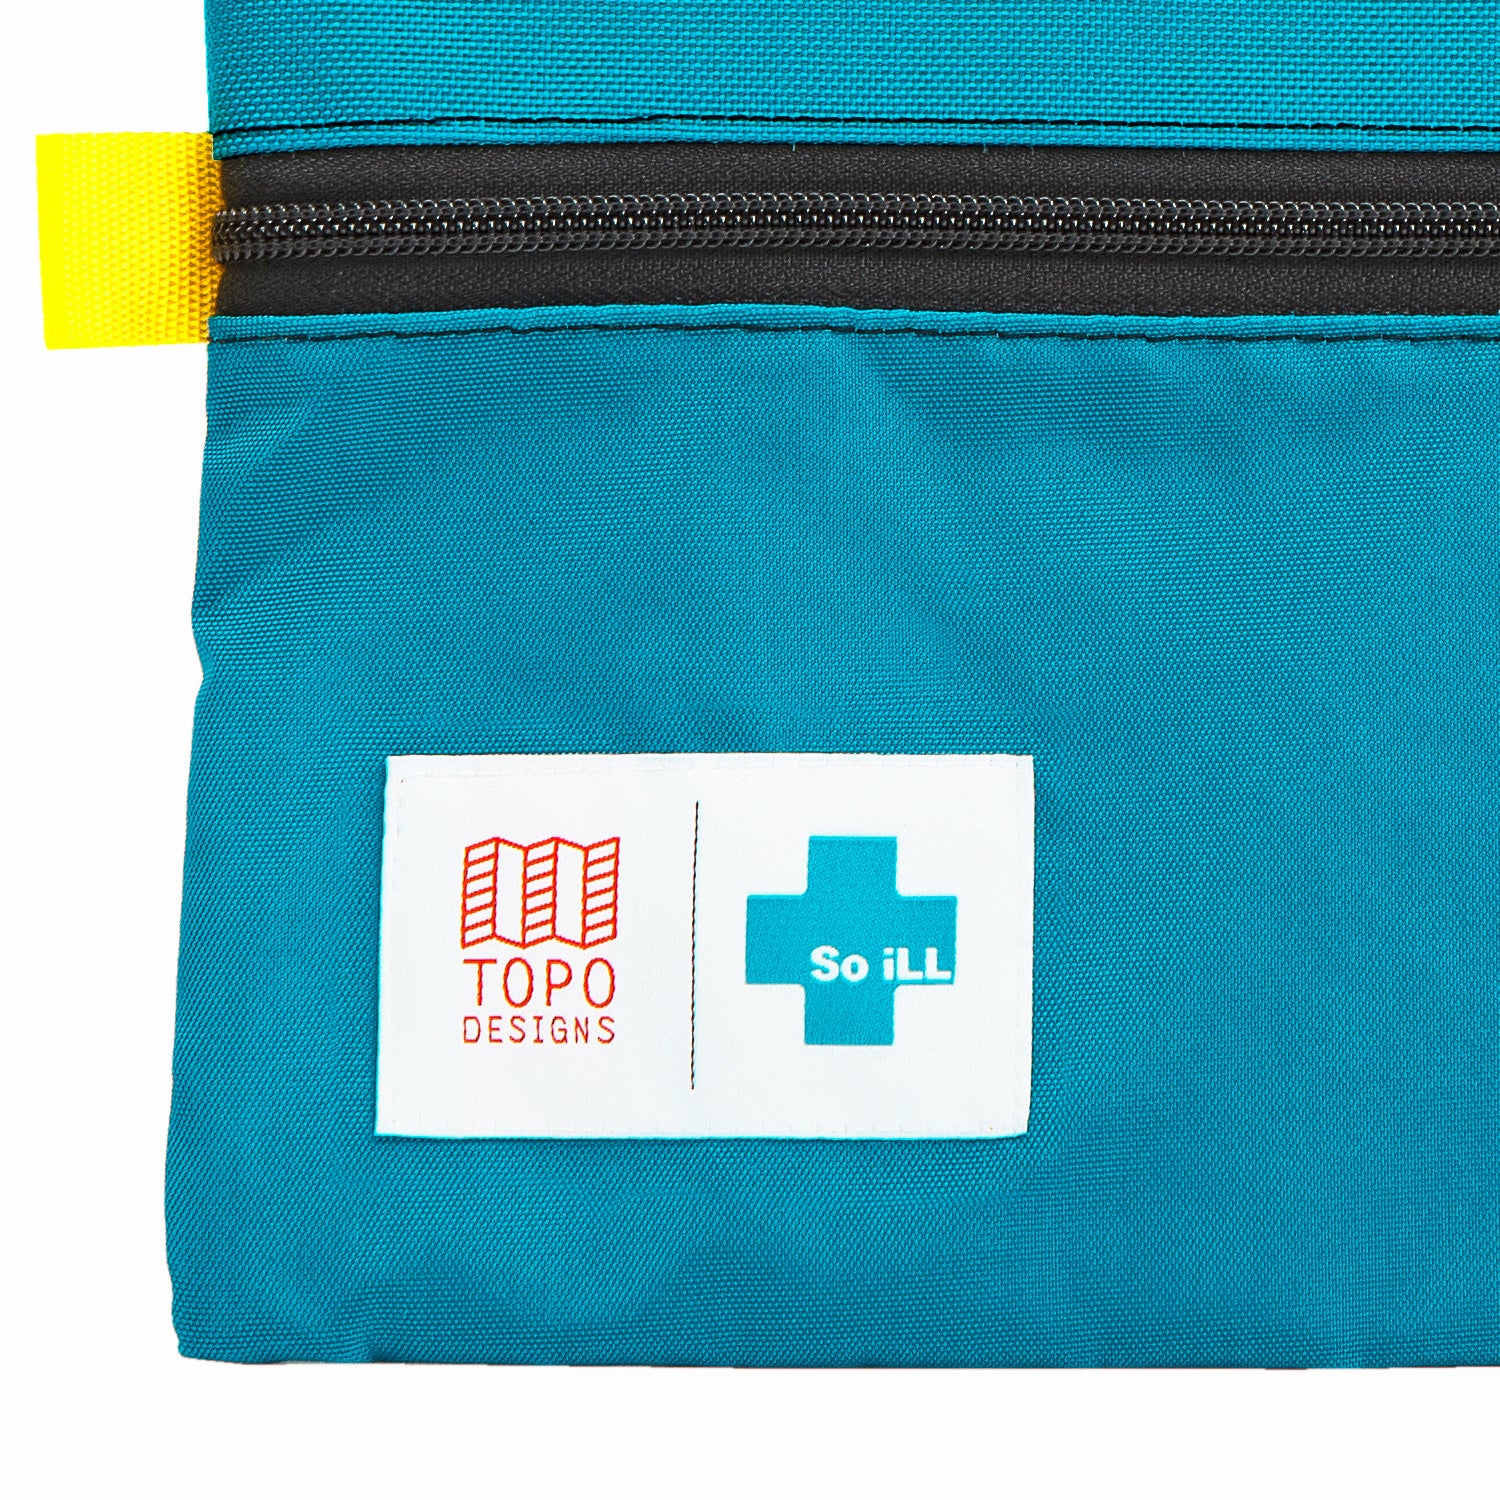 Topo Designs x So iLL Accessory Bag